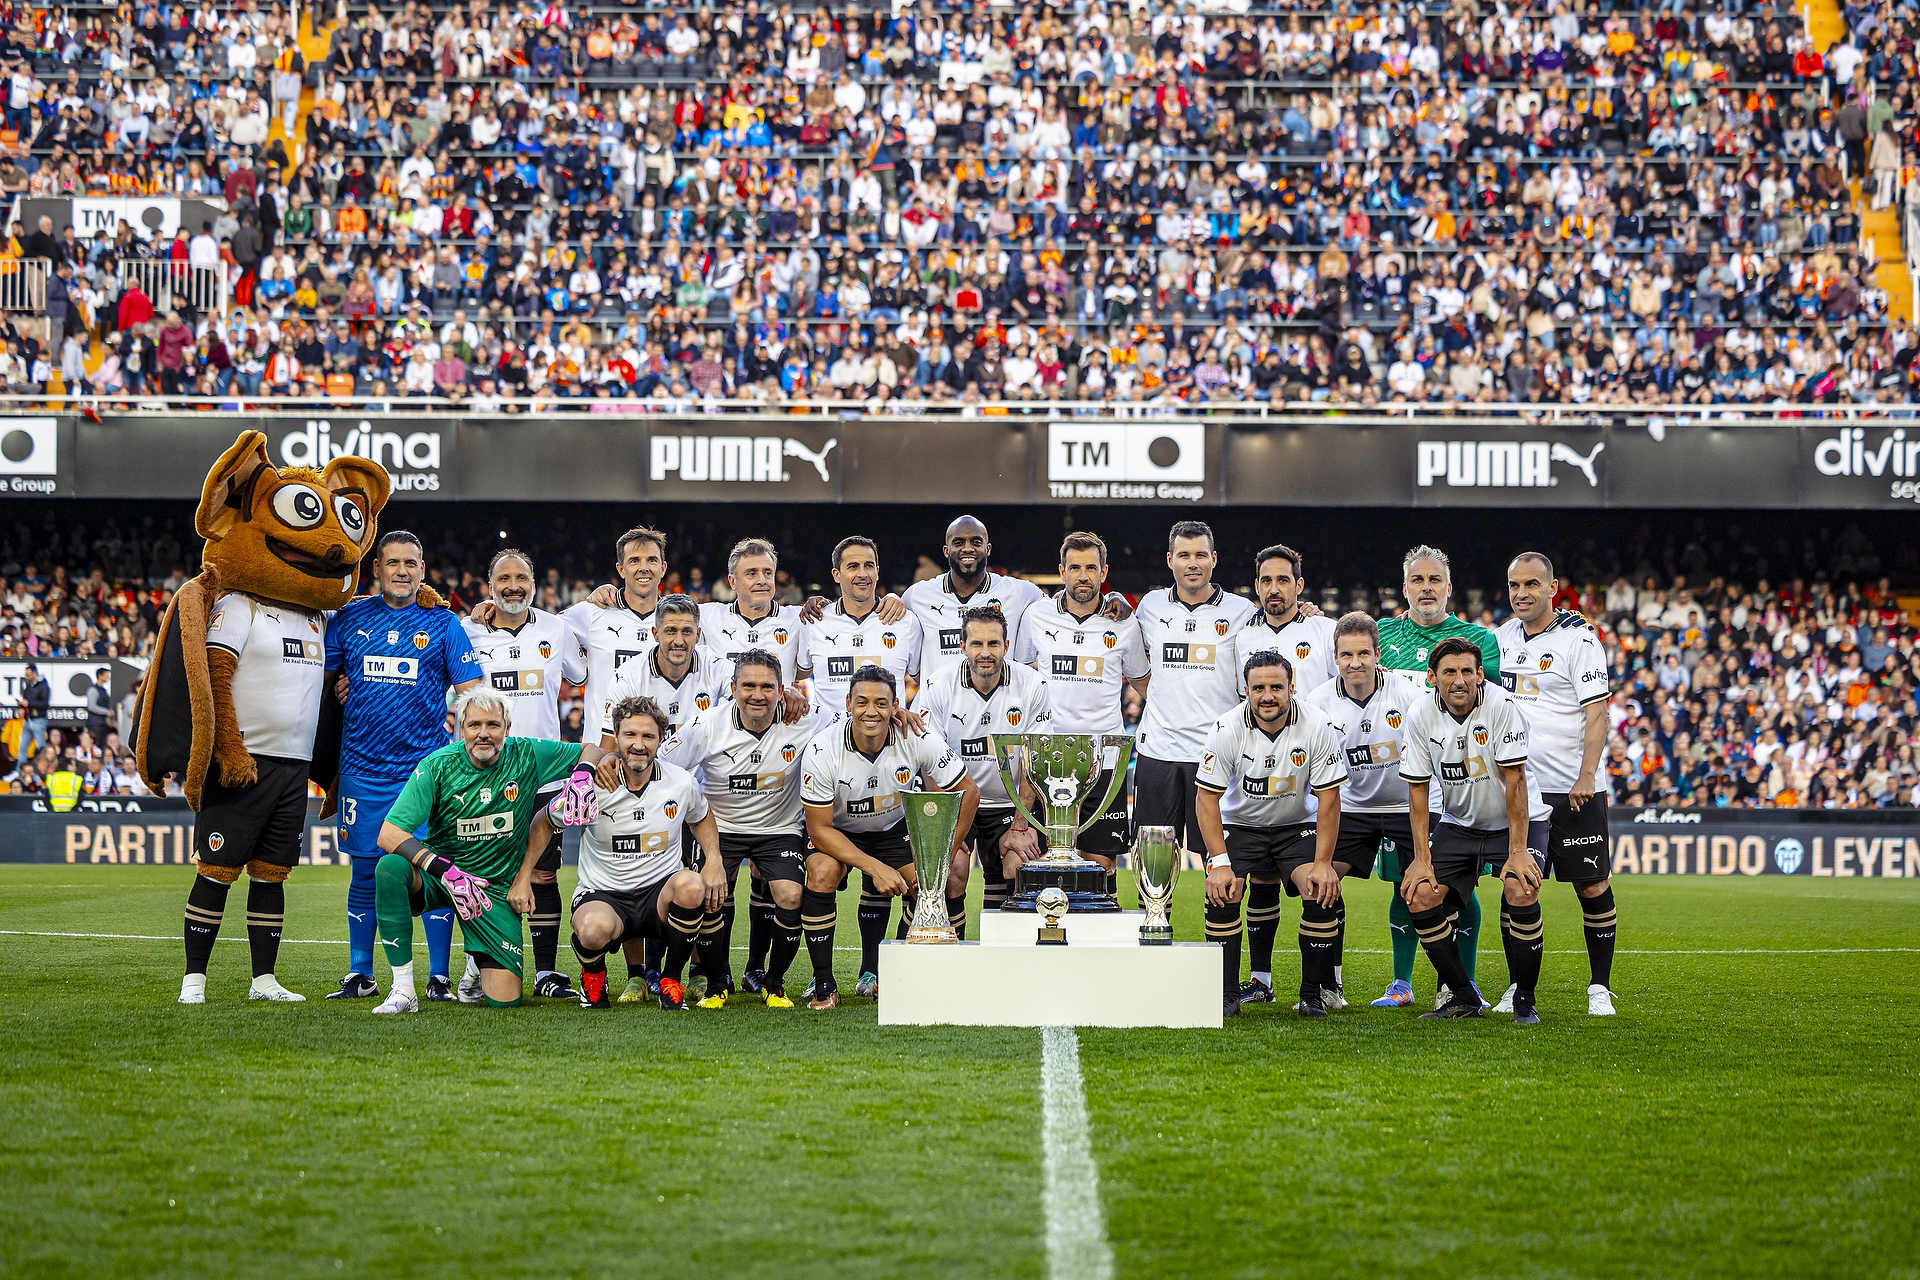 Imagen de todos los integrantes, presentes en el partido, del que fue denominado el mejor equipo del mundo por la FIFA en 2004